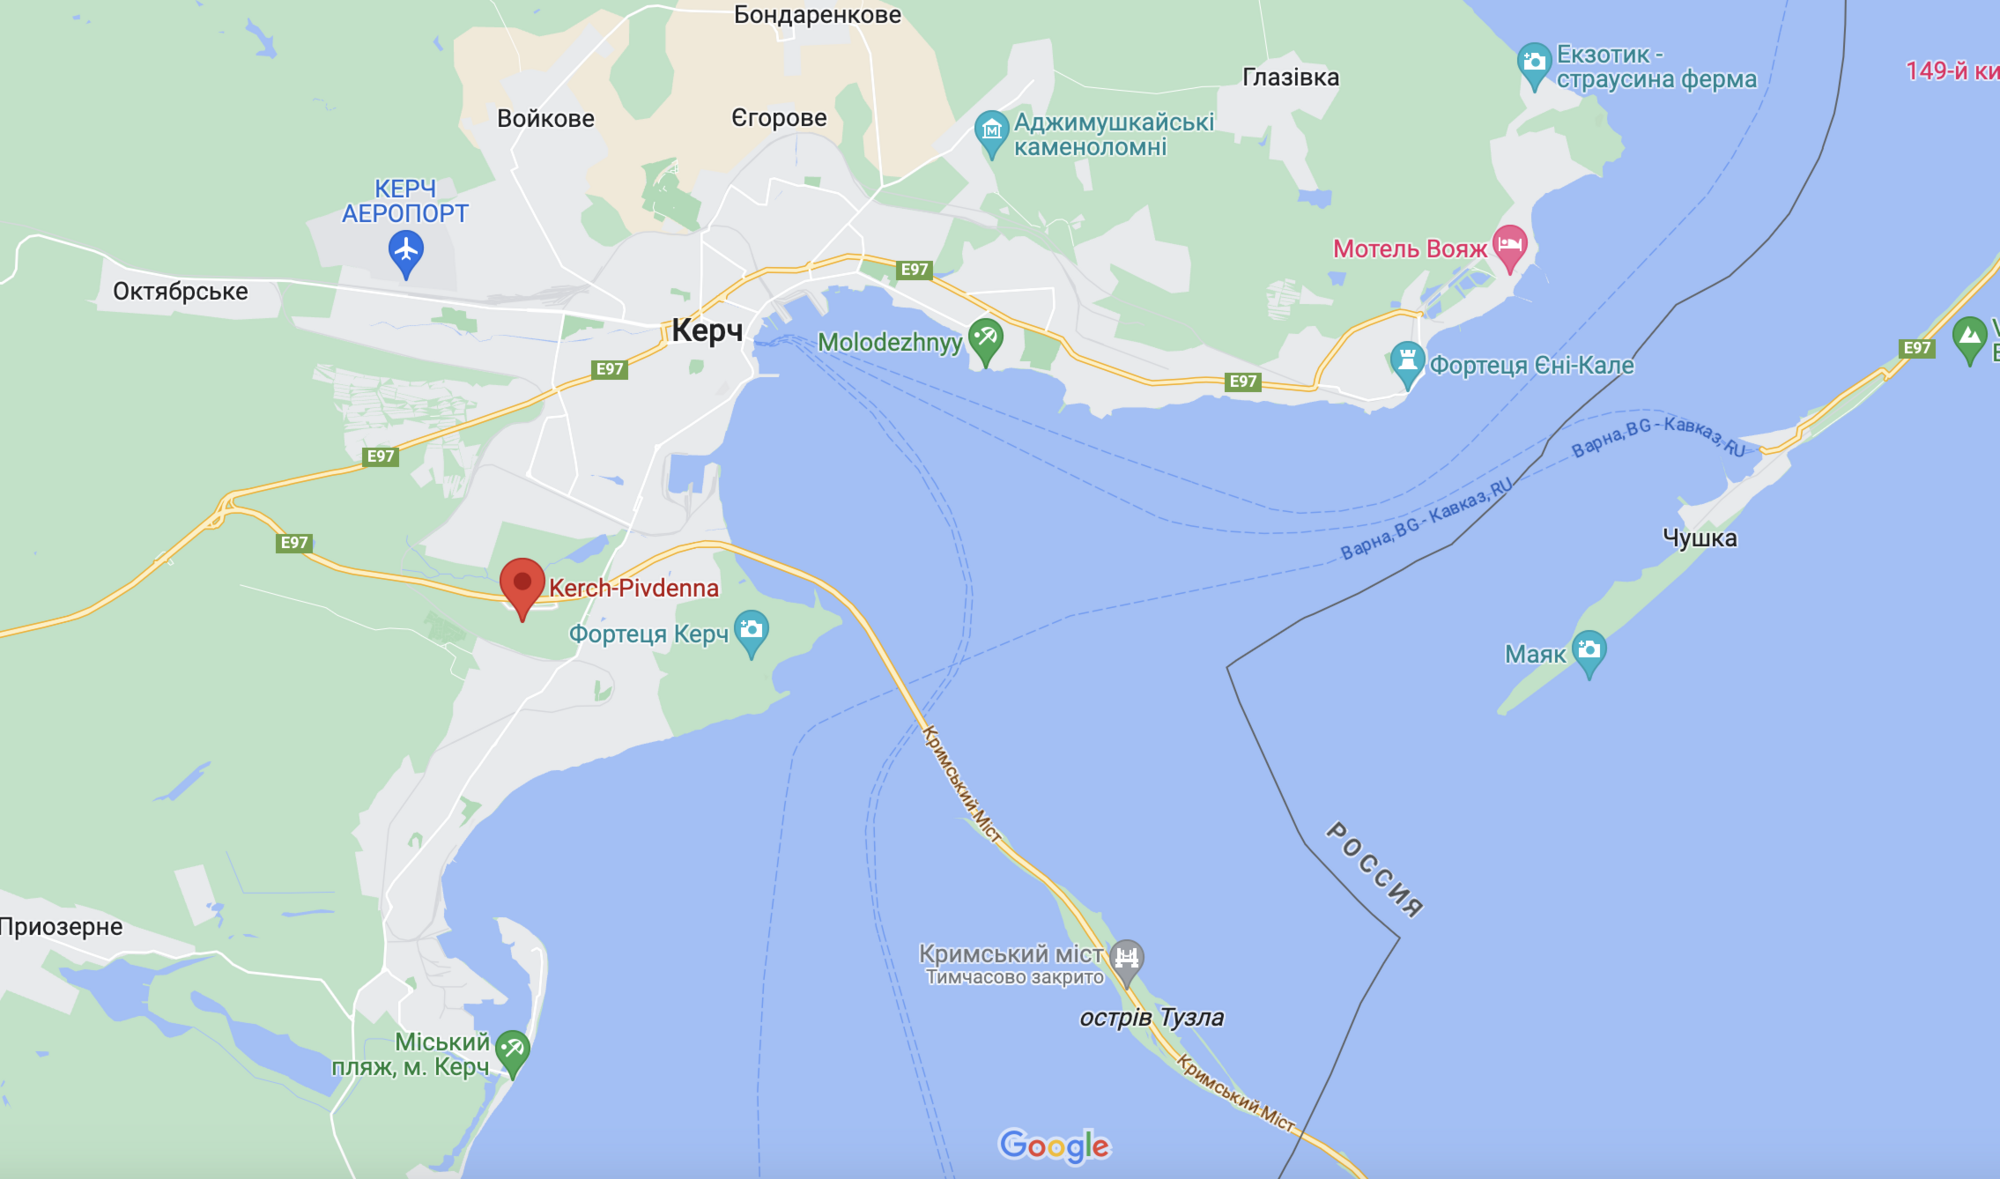 Оккупанты перекрыли движение по Крымскому мосту: в Керчи объявлена эвакуация на железнодорожном вокзале